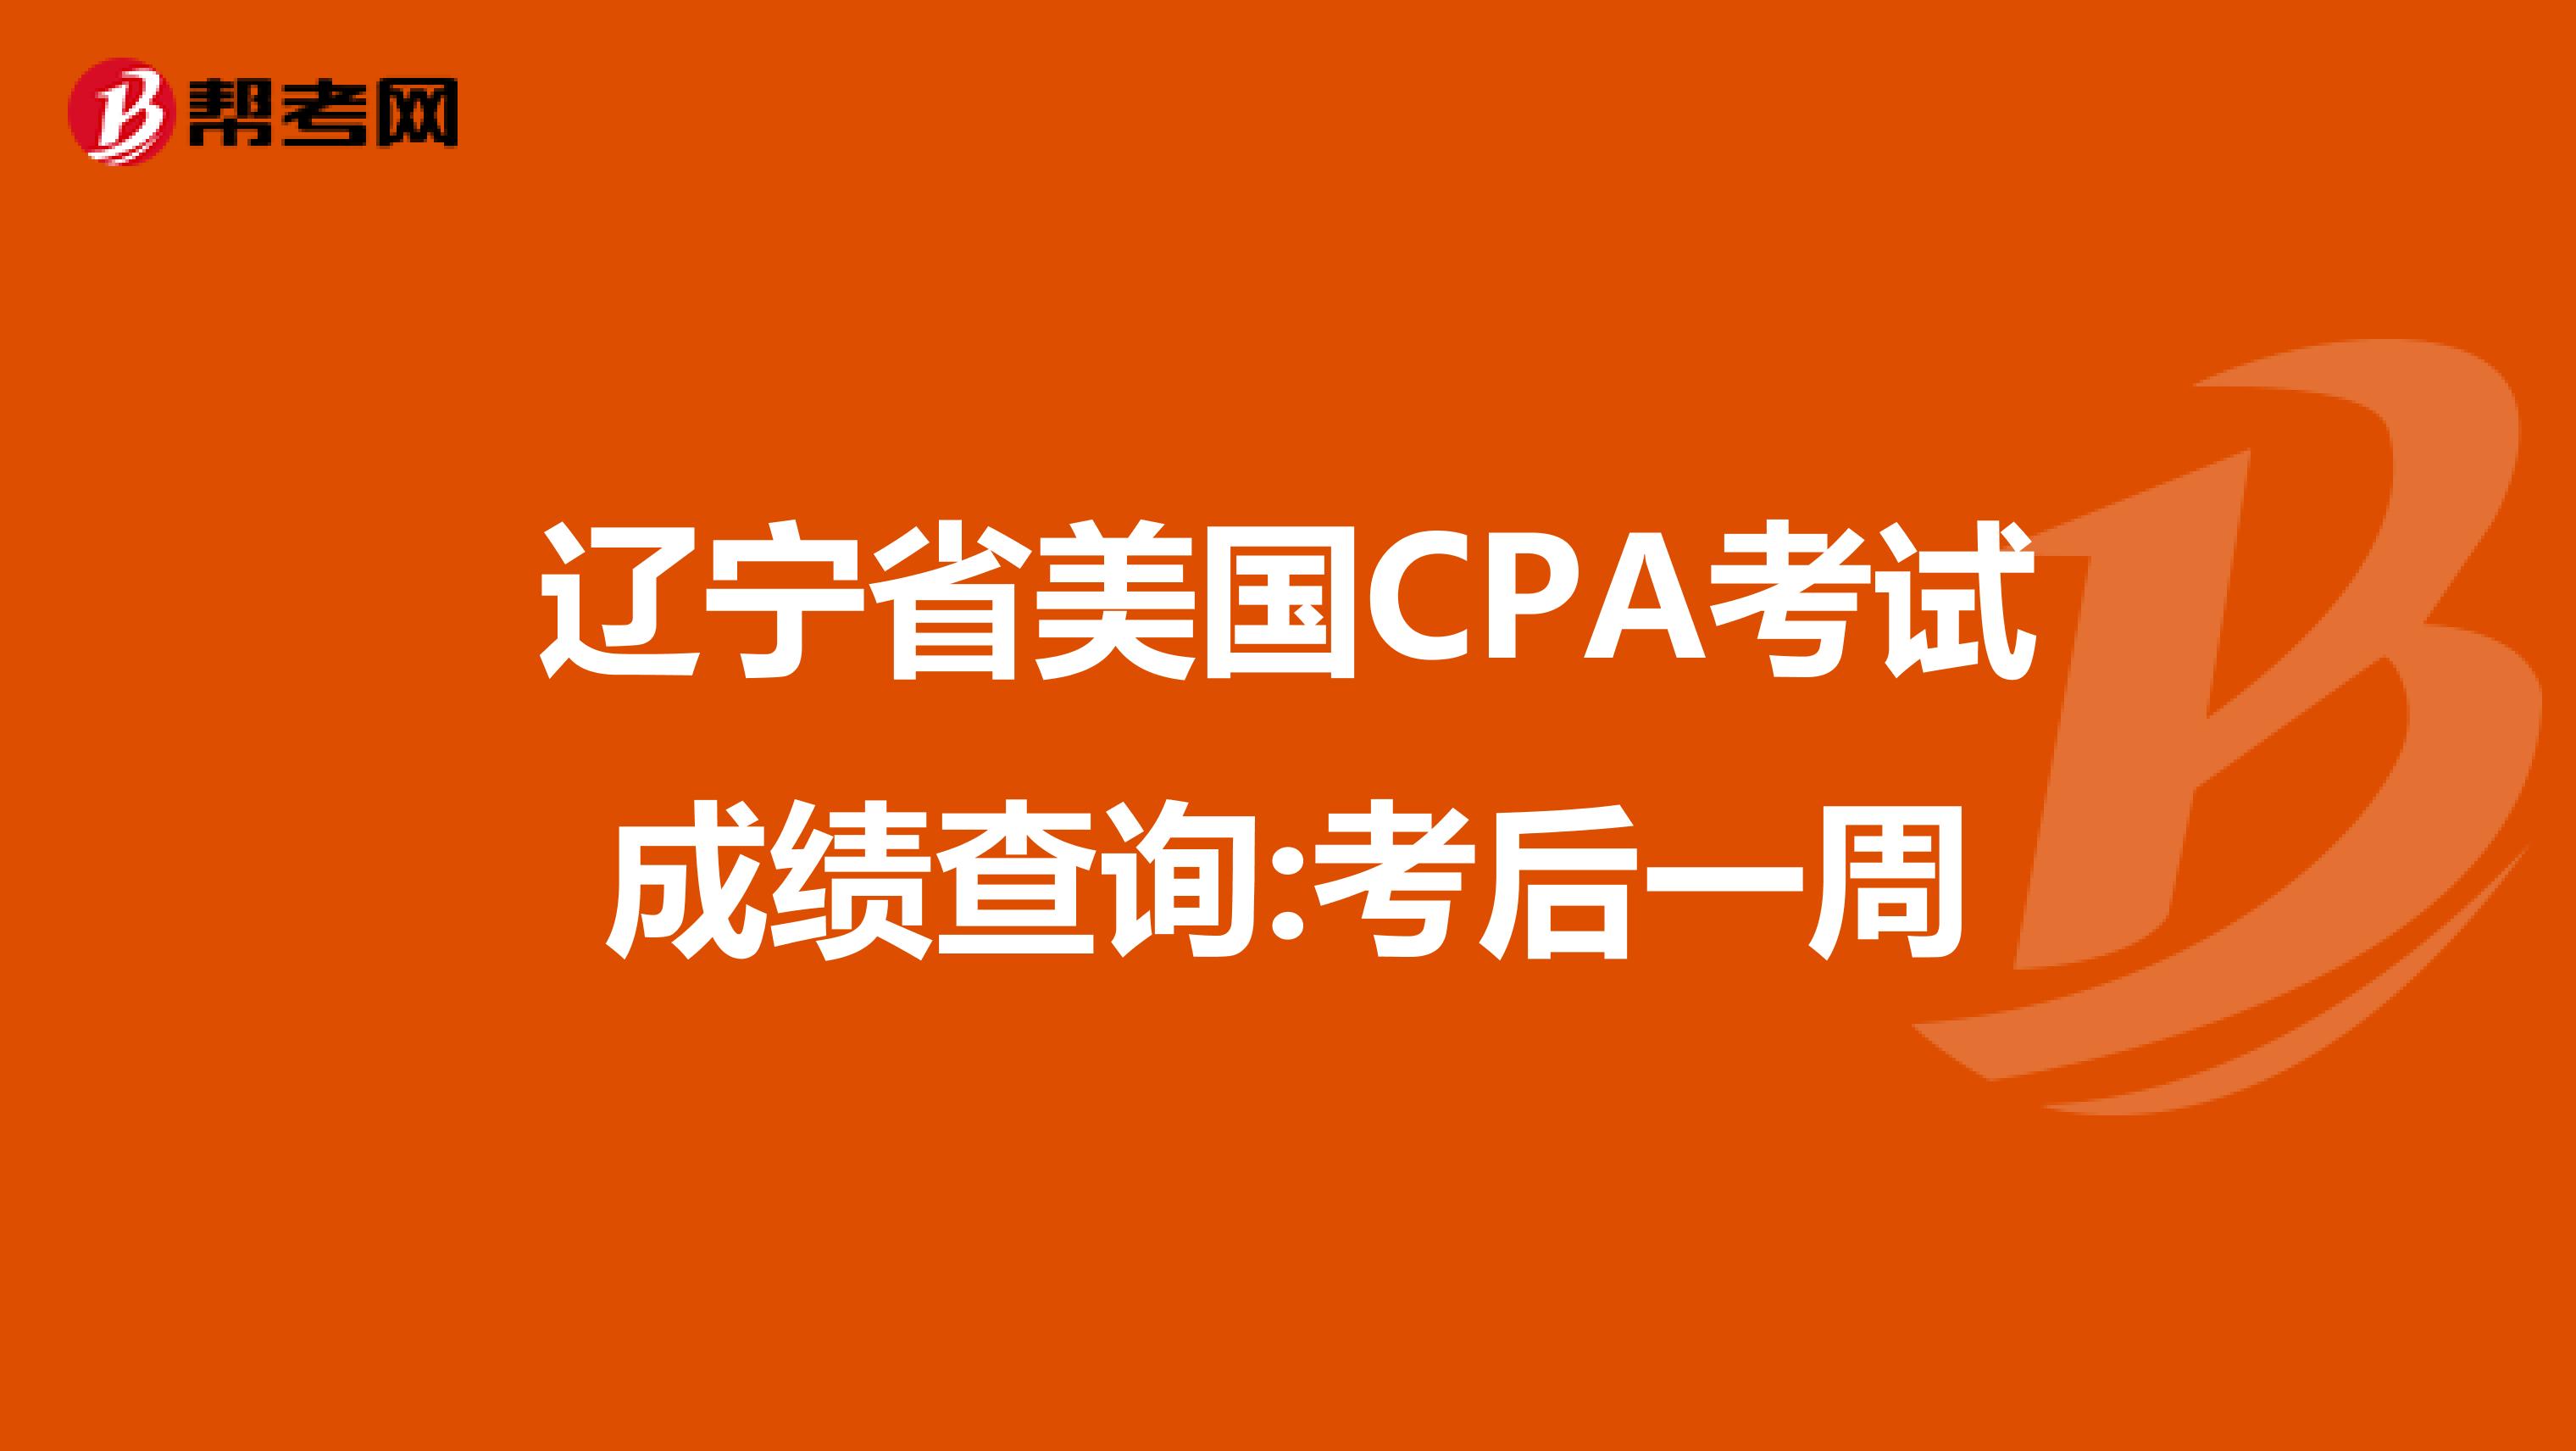 辽宁省美国CPA考试成绩查询:考后一周